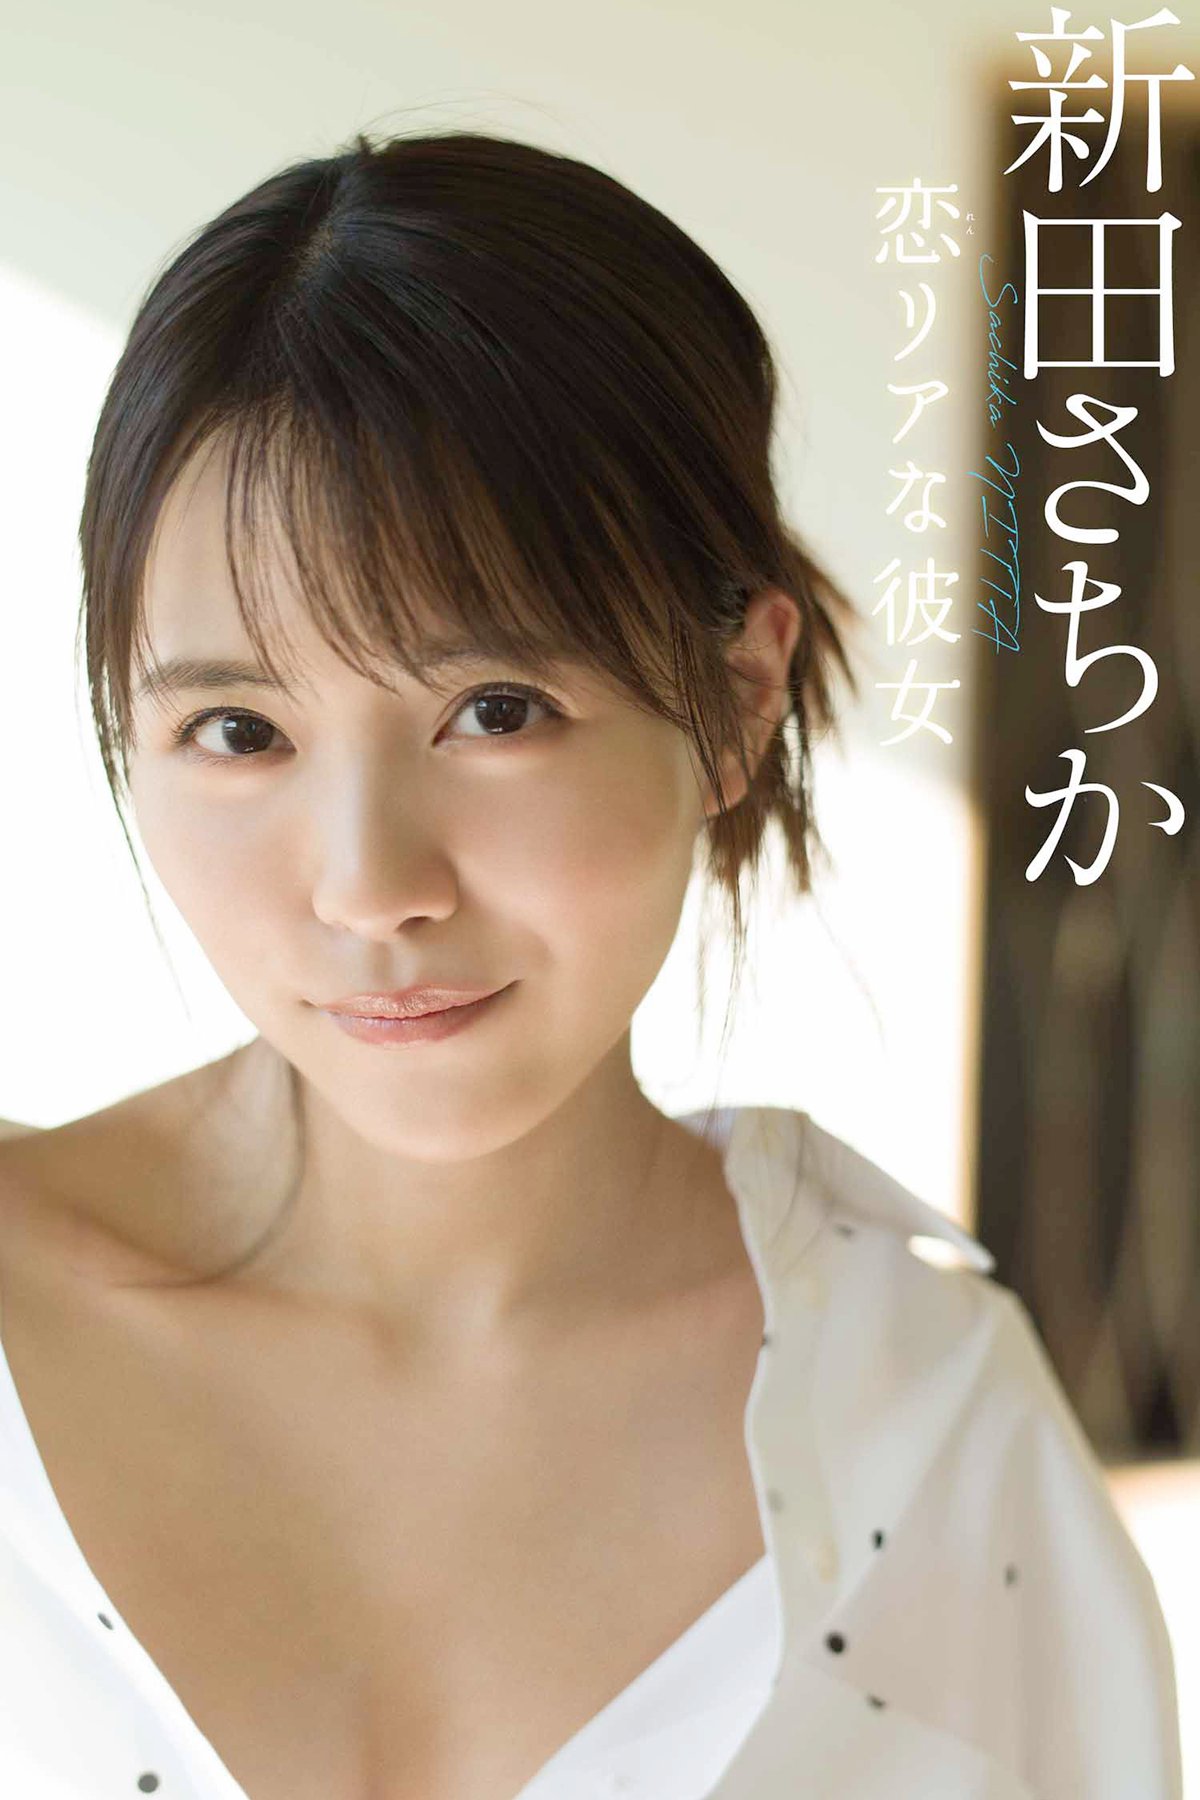 Weekly Photobook 2021-02-08 Sachika Nitta 新田さちか Love girlfriend 恋リアな彼女